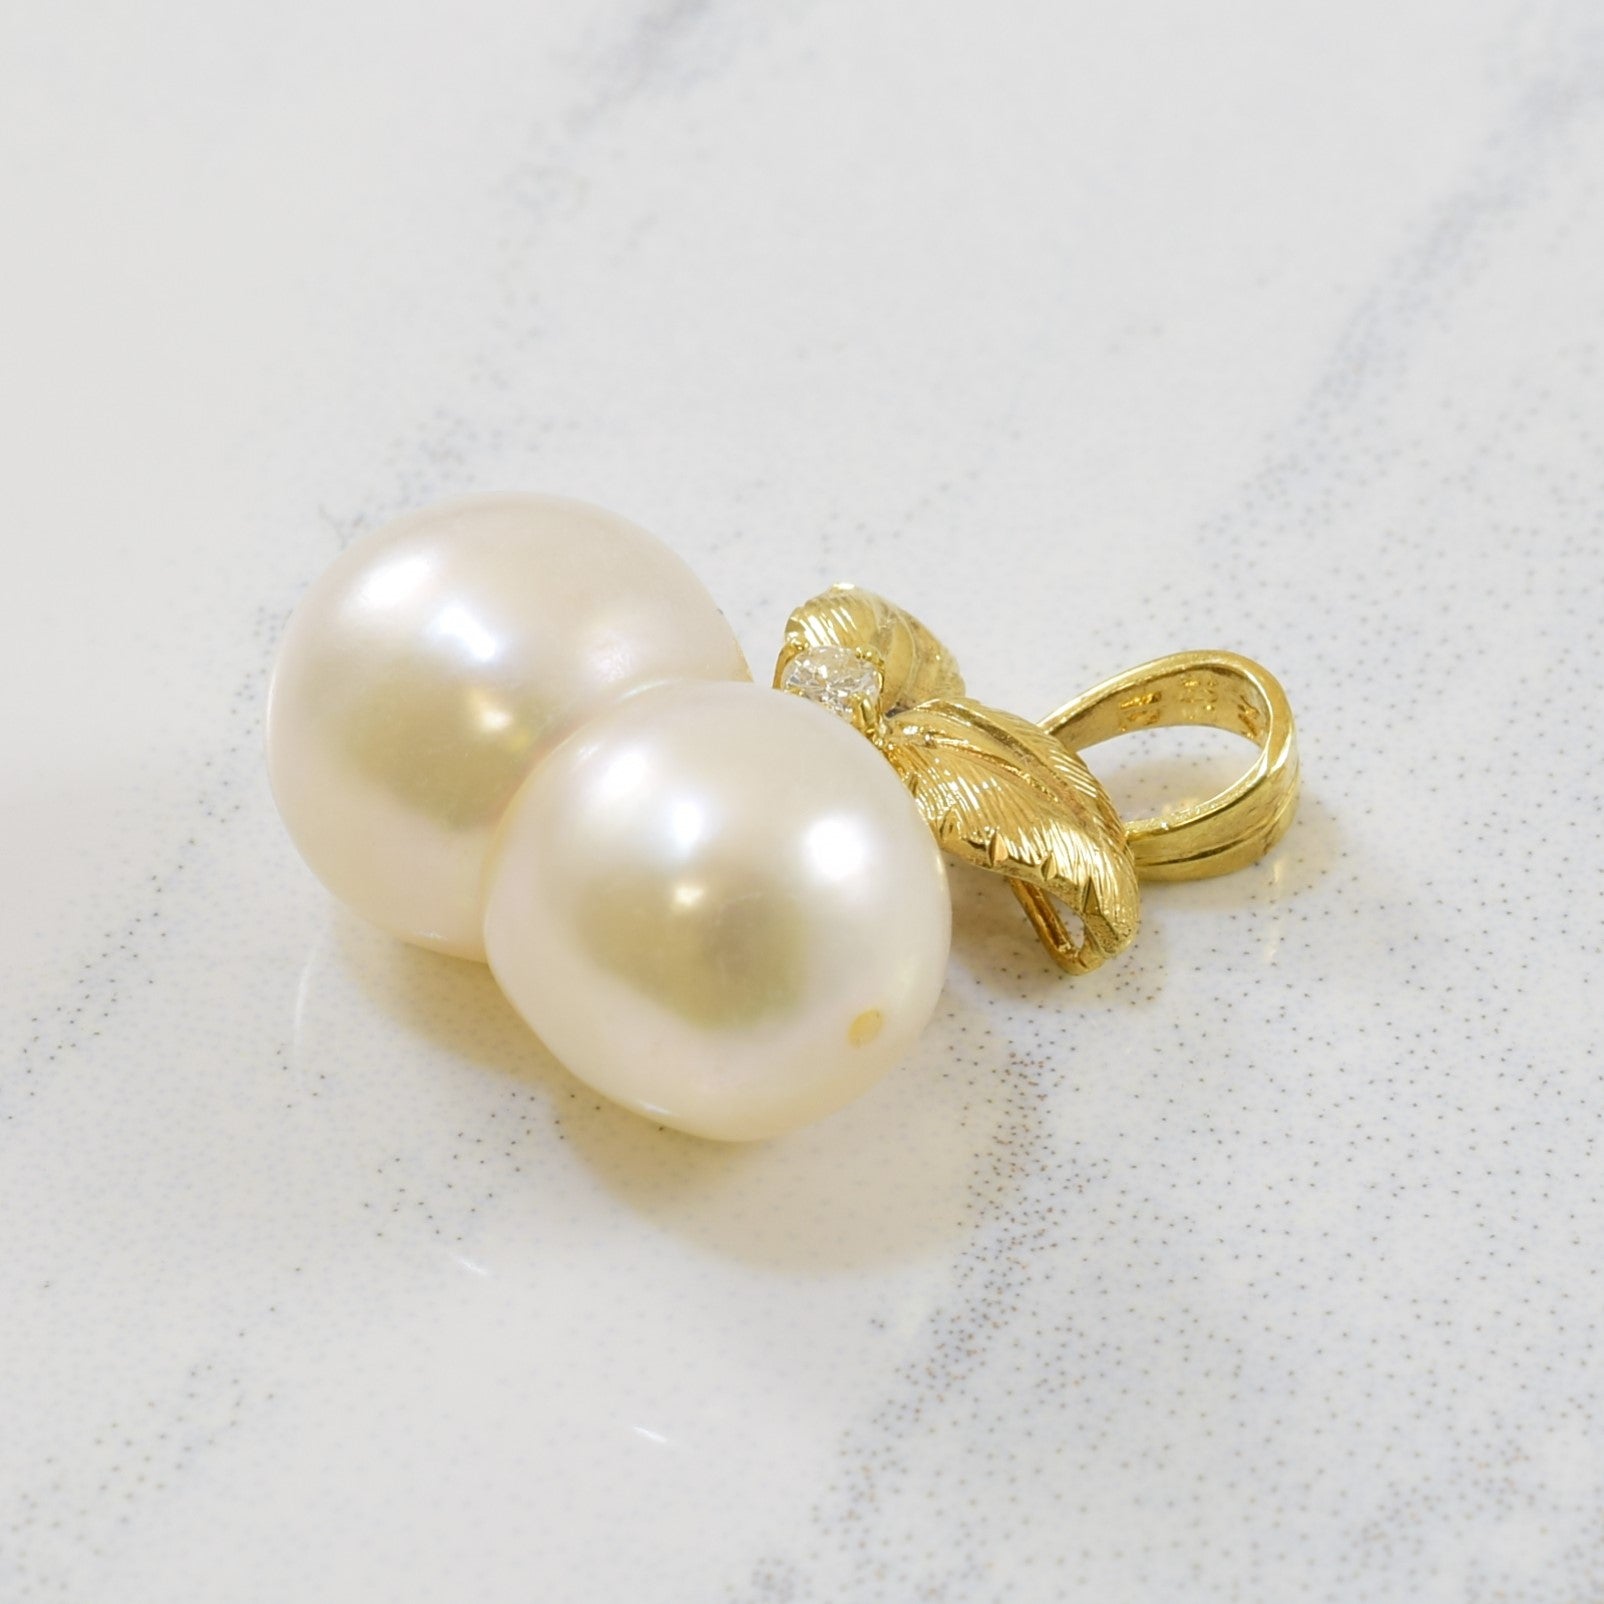 Baroque Pearl & Diamond Pendant | 7.90ctw, 0.02ct |